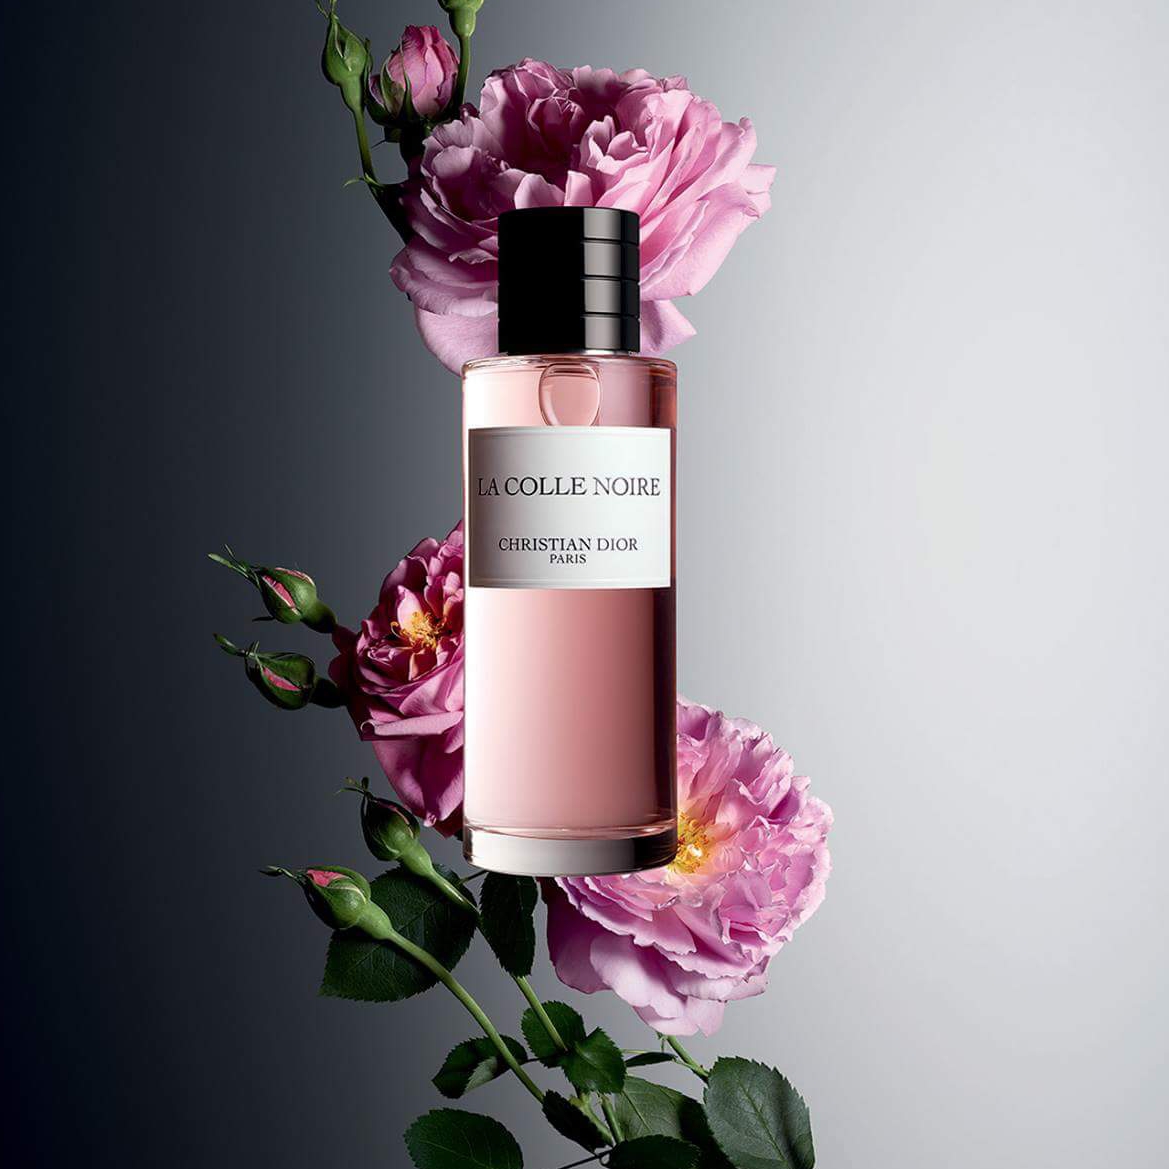 La Colle Noire เป็นชื่อของอสังหาริมทรัพย์ที่ Christian Dior ซื้อในปี 1951 ซึ่งกลายเป็นสวรรค์แห่งดอกไม้ของเขา ซึ่งเป็นสวรรค์แห่งความสงบอย่างแท้จริง น้ำหอม La Colle Noire เป็นดั่งบทกวีของ May Rose ที่แผ่ซ่านไปทั่วสวน แต่งขึ้นเหมือนภาพวาดกลิ่นของสถานที่และดอกไม้ในตำนาน  CHARACTER น้ำหอม La Colle Noire แต่งแต้มภาพลักษณ์ที่เผ็ดร้อนของ May Rose ด้วยบุคลิกที่แข็งแกร่ง ส่วนประกอบของกลิ่นถูกปรุงแต่งด้วยความงามและความฉุนเฉียวของดอกไม้สีน้ำผึ้งแห่งกามารมณ์นี้  คุณสมบัติเด่น กลิ่นหอมกุหลาบ พริกไทย ล่องลอยอยู่ในอากาศระหว่างการเก็บเกี่ยว สี สีชมพูสดใสของดอกไม้ ซึ่งความแตกต่างจะแตกต่างกันไปตามมุมของแสงแดดในทุ่ง Grasse และสวนดอกไม้ของ Château de La Colle